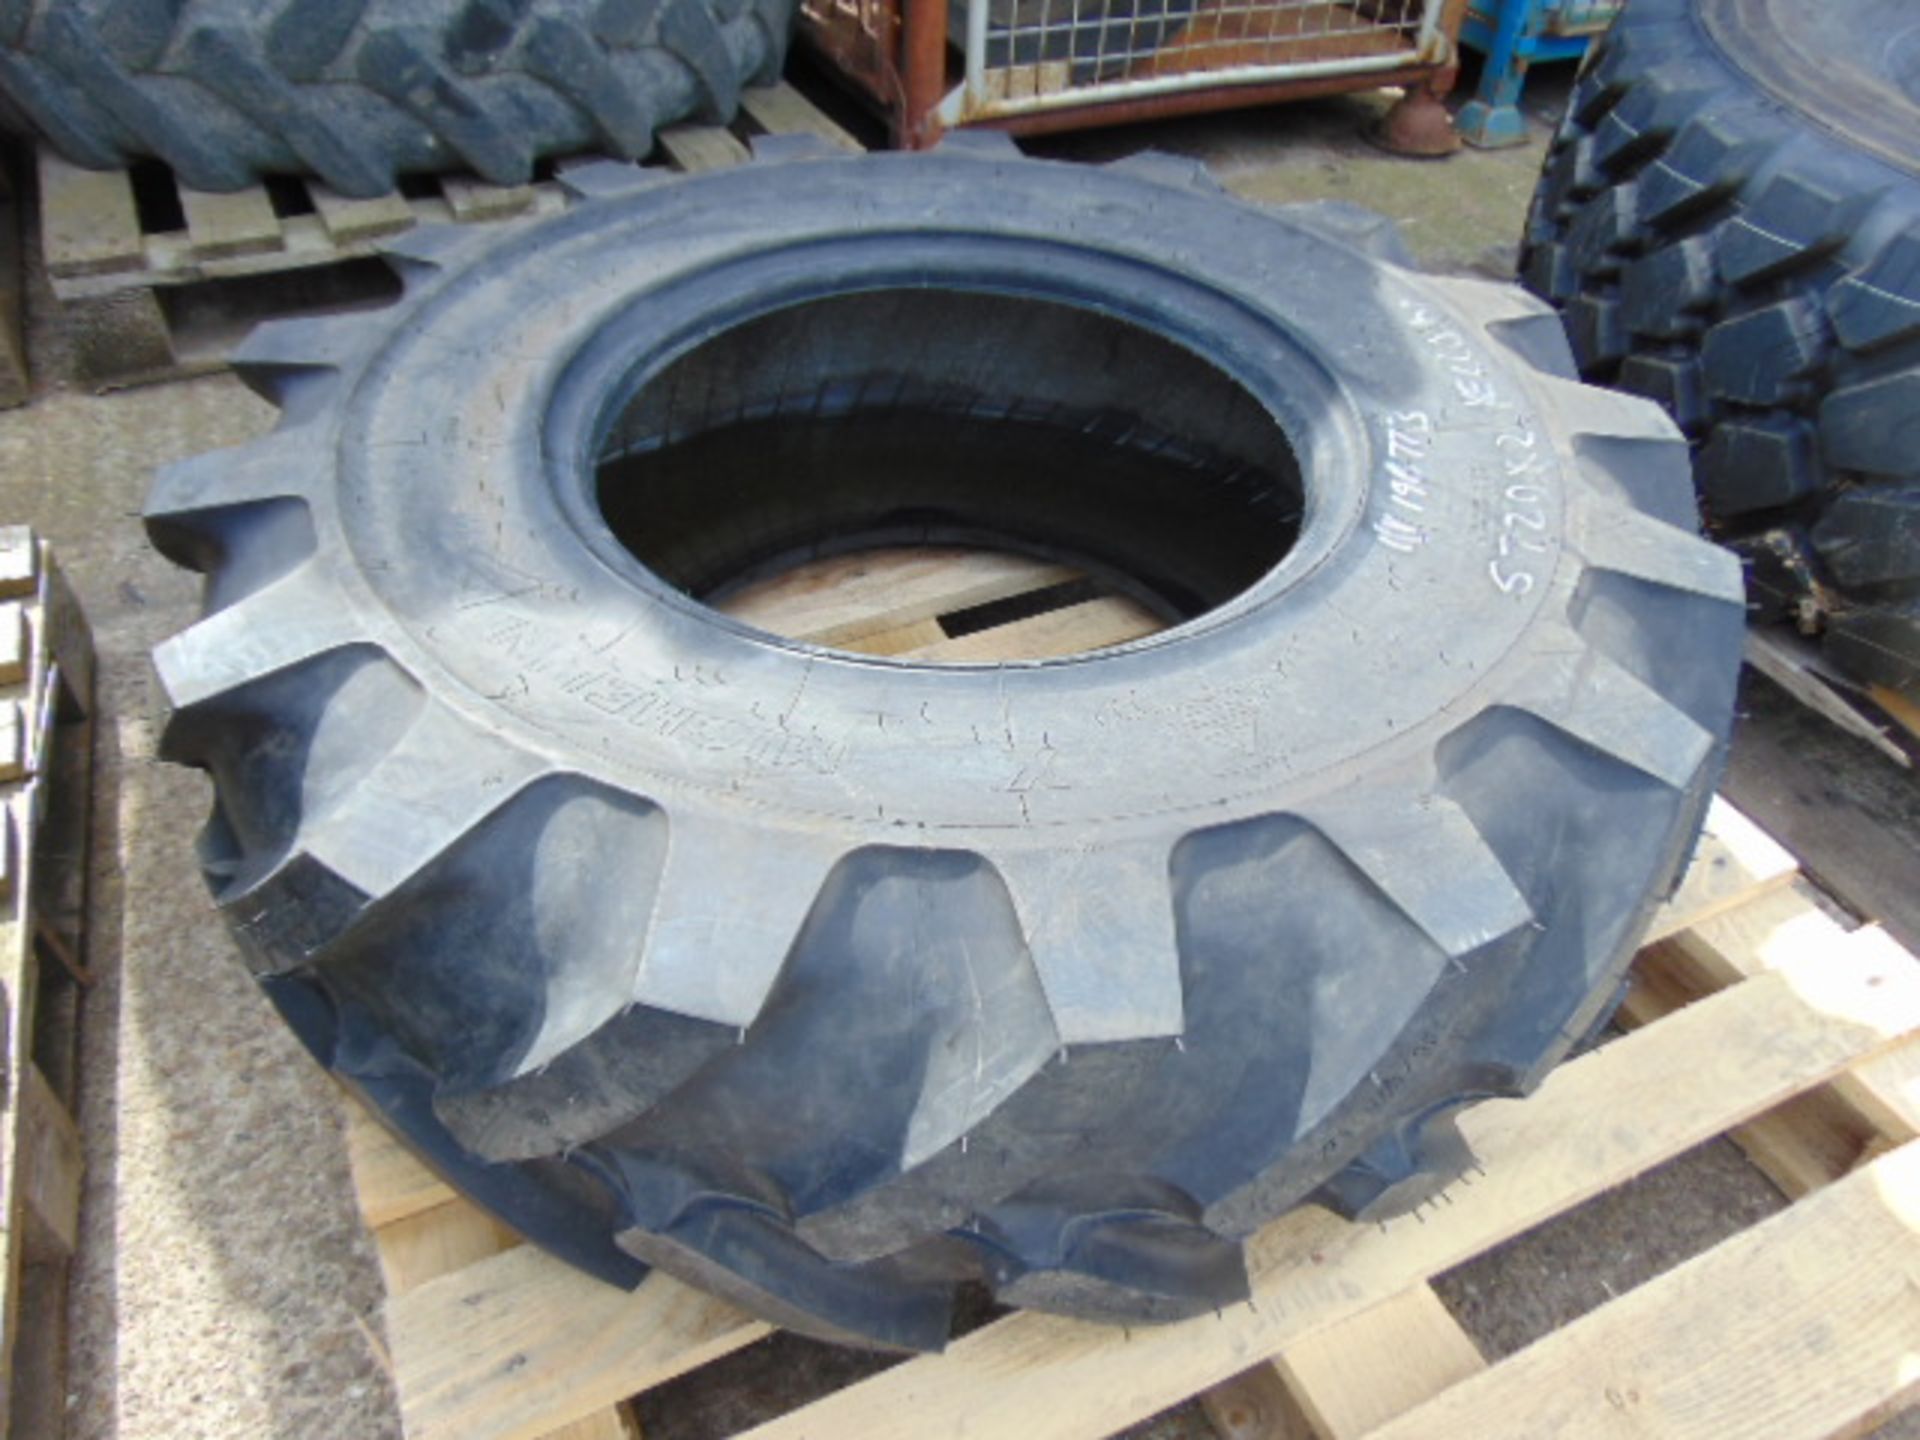 1 x Michelin 335/80 R18 Tyre